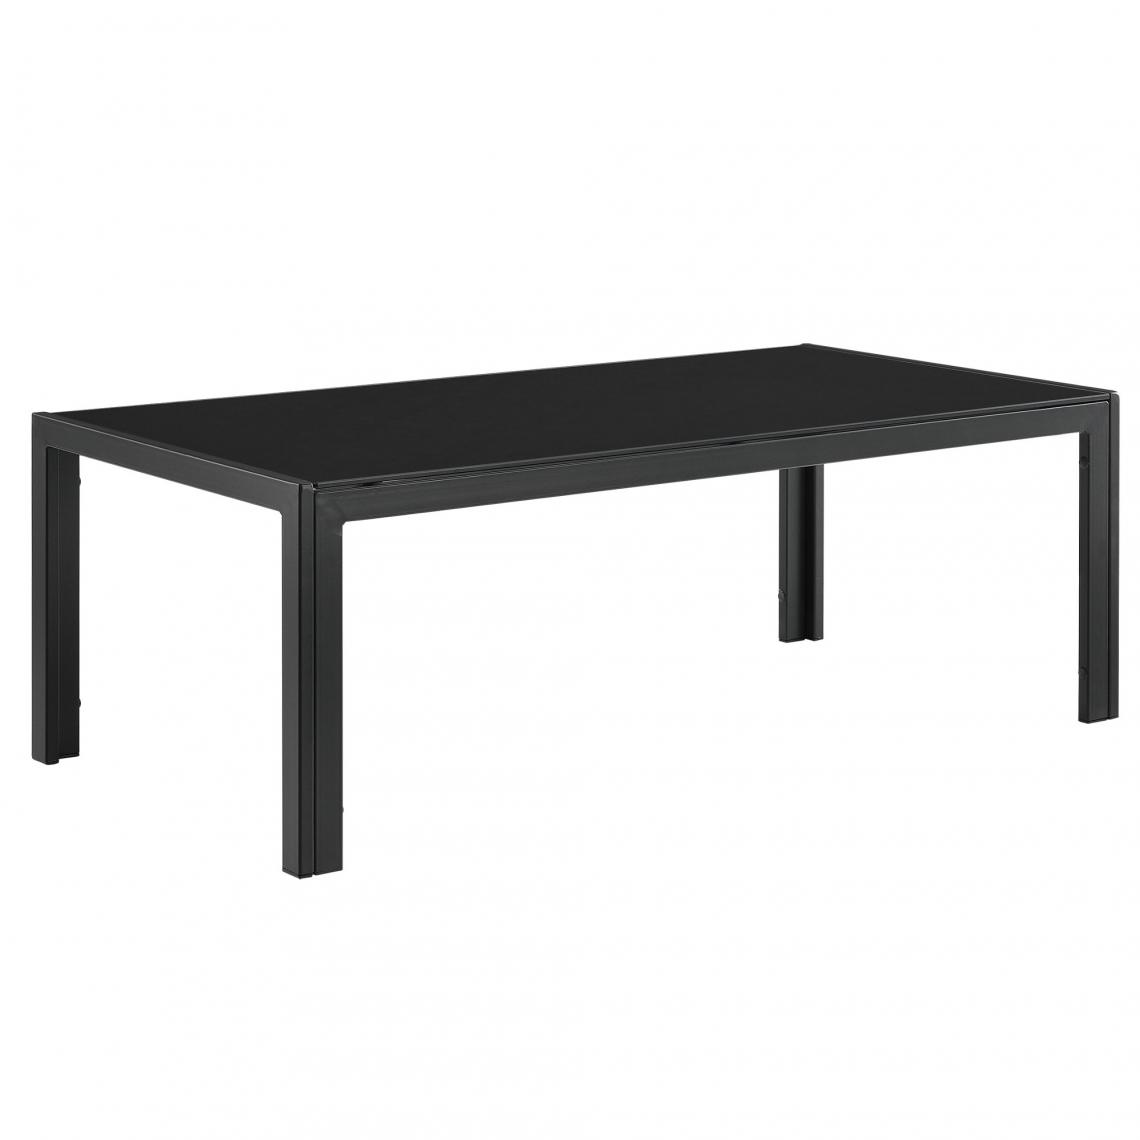 Helloshop26 - Table basse extérieure en verre 100 x 50 x 35 cm noir 03_0004134 - Tables basses